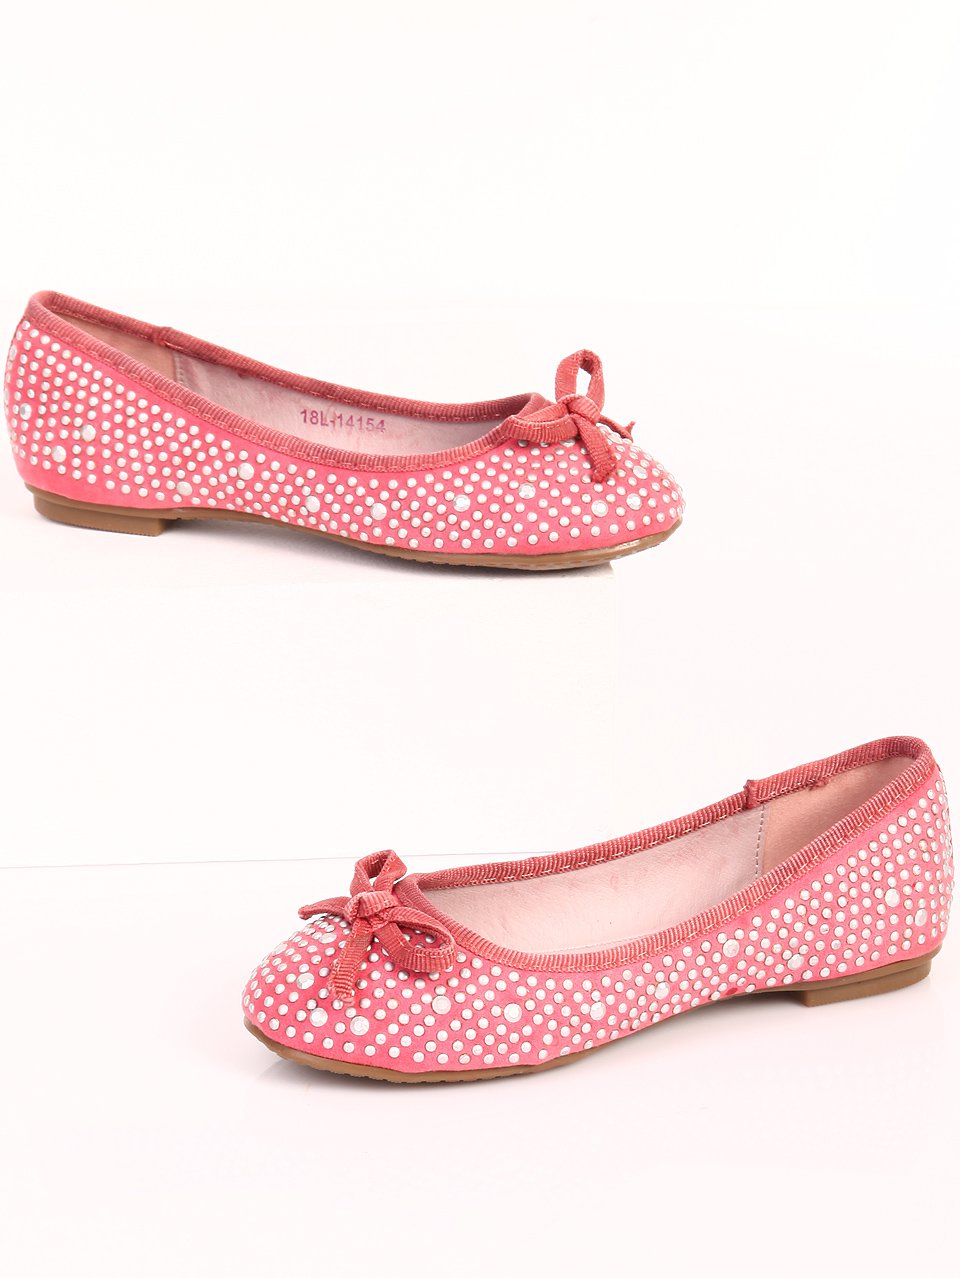 Ежедневни детски обувки в розово 18L-14154 pink